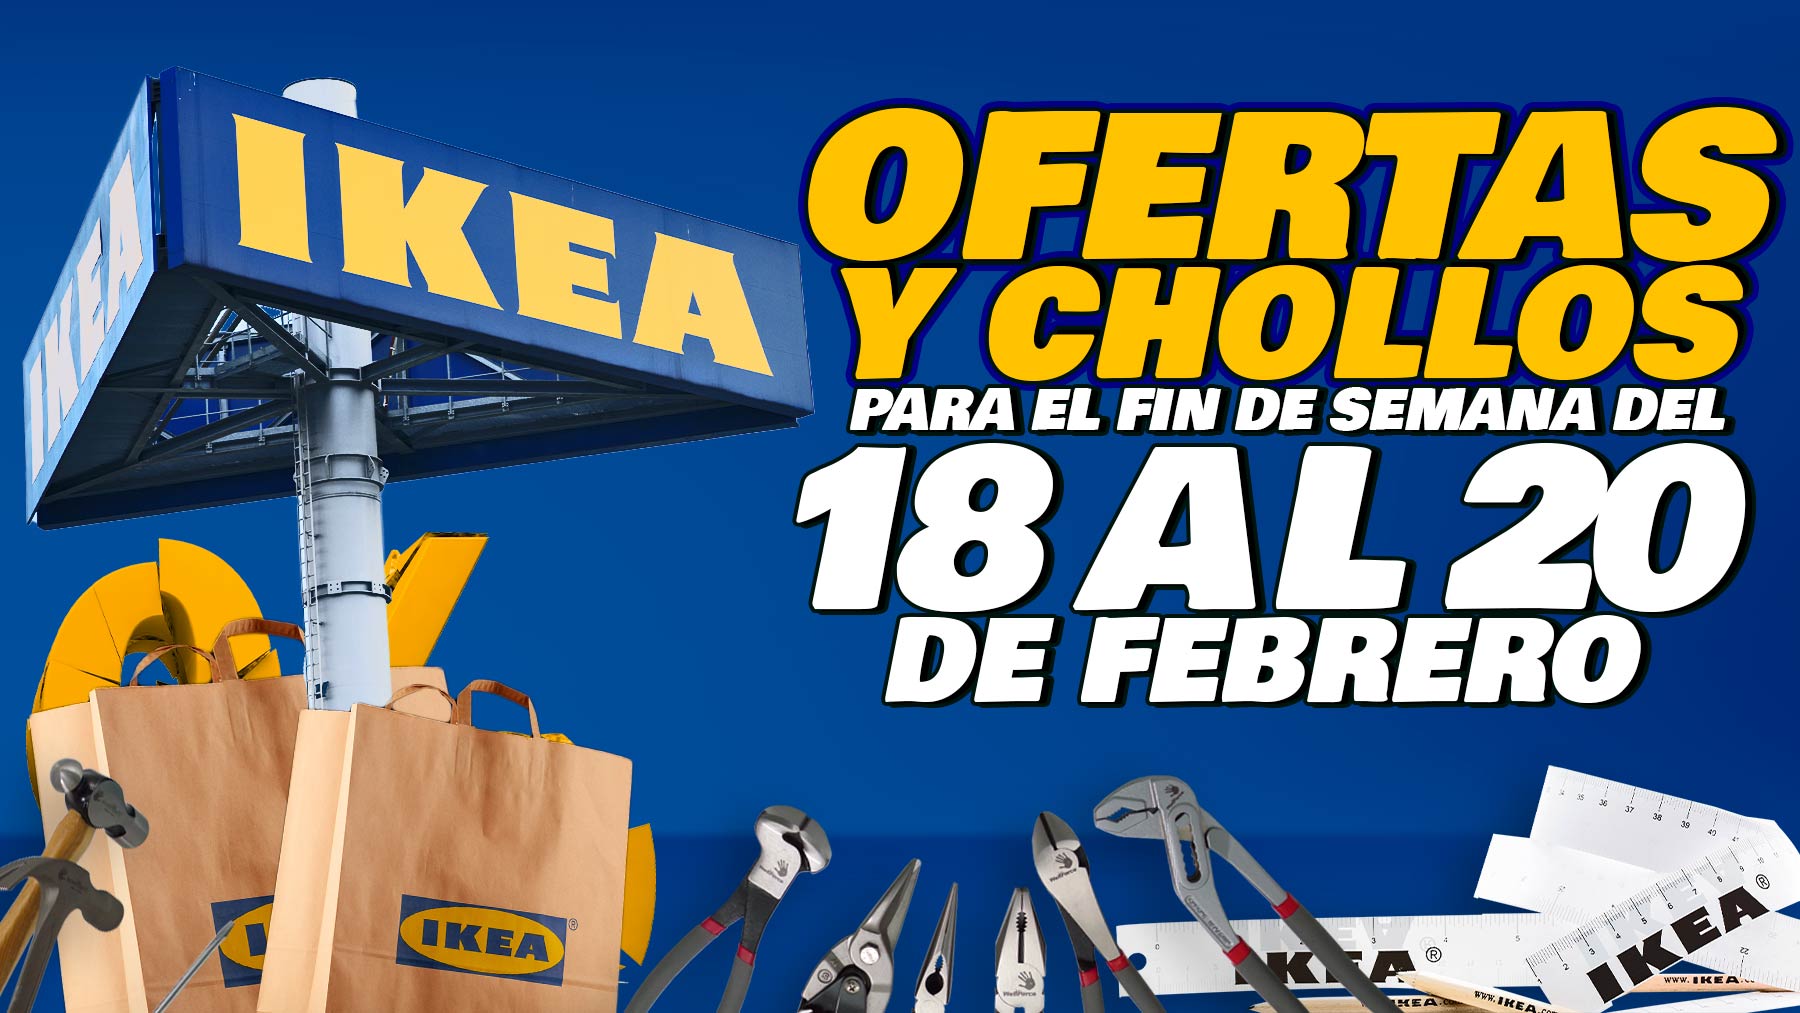 Ofertas y descuentos de Ikea para el fin de semana